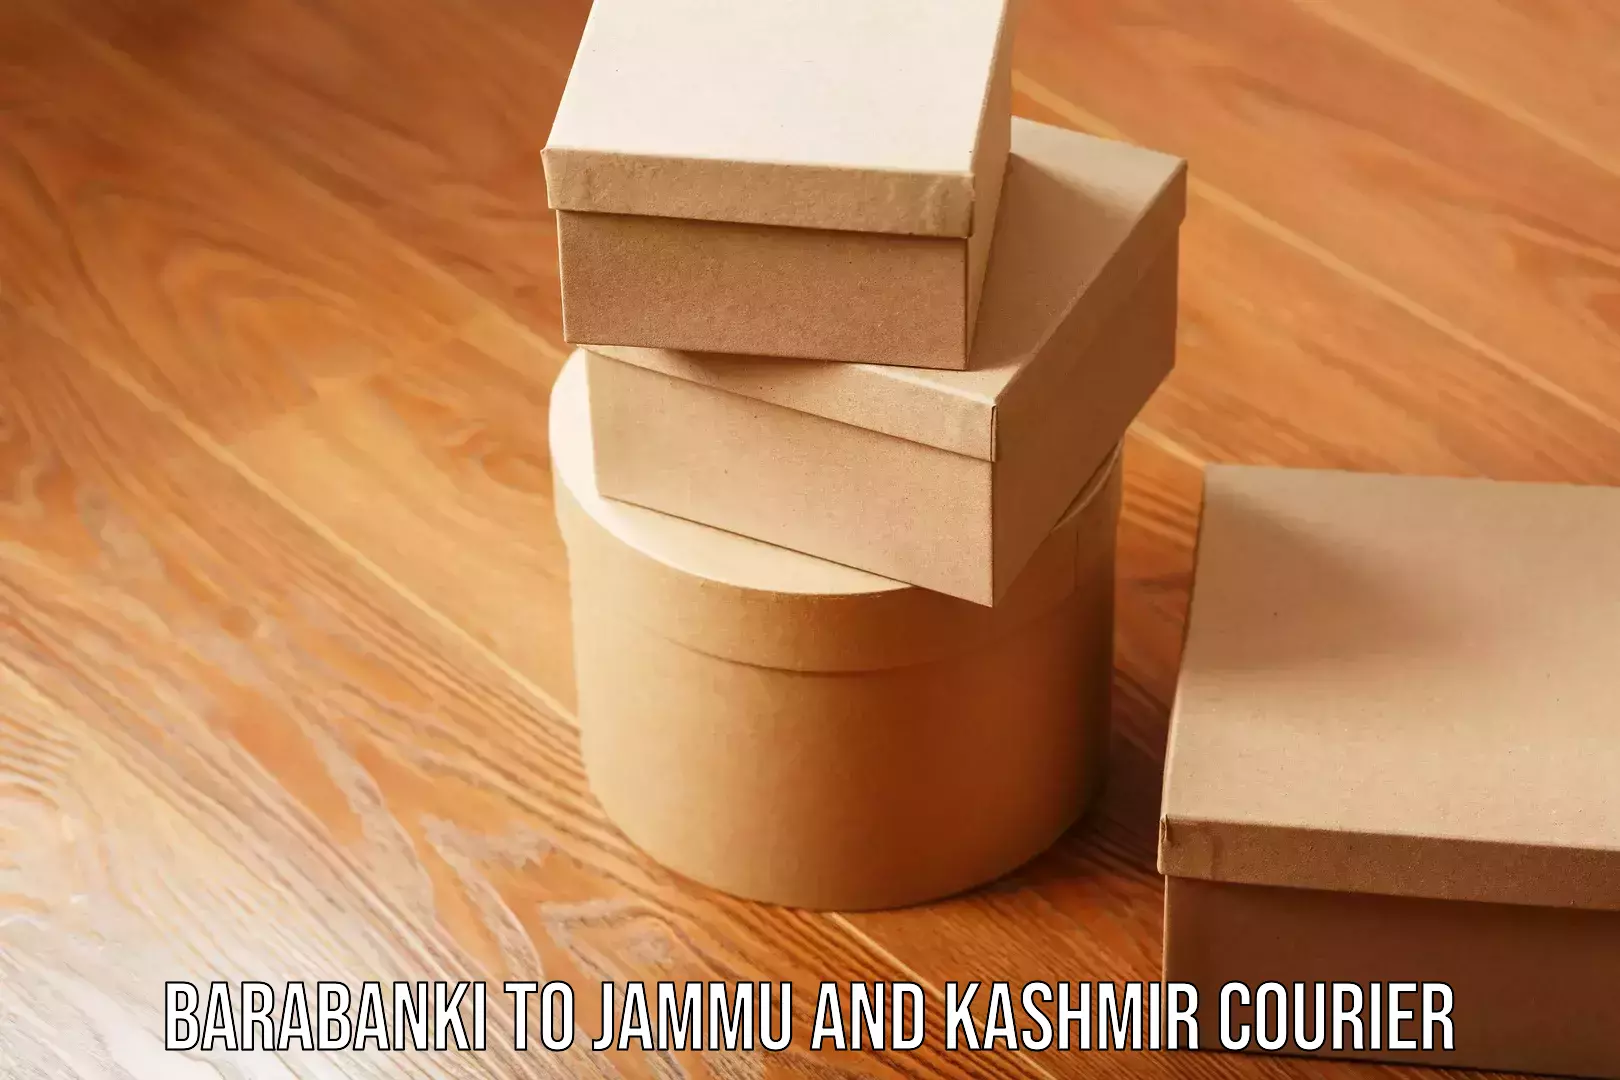 Reliable shipping partners Barabanki to Jammu and Kashmir